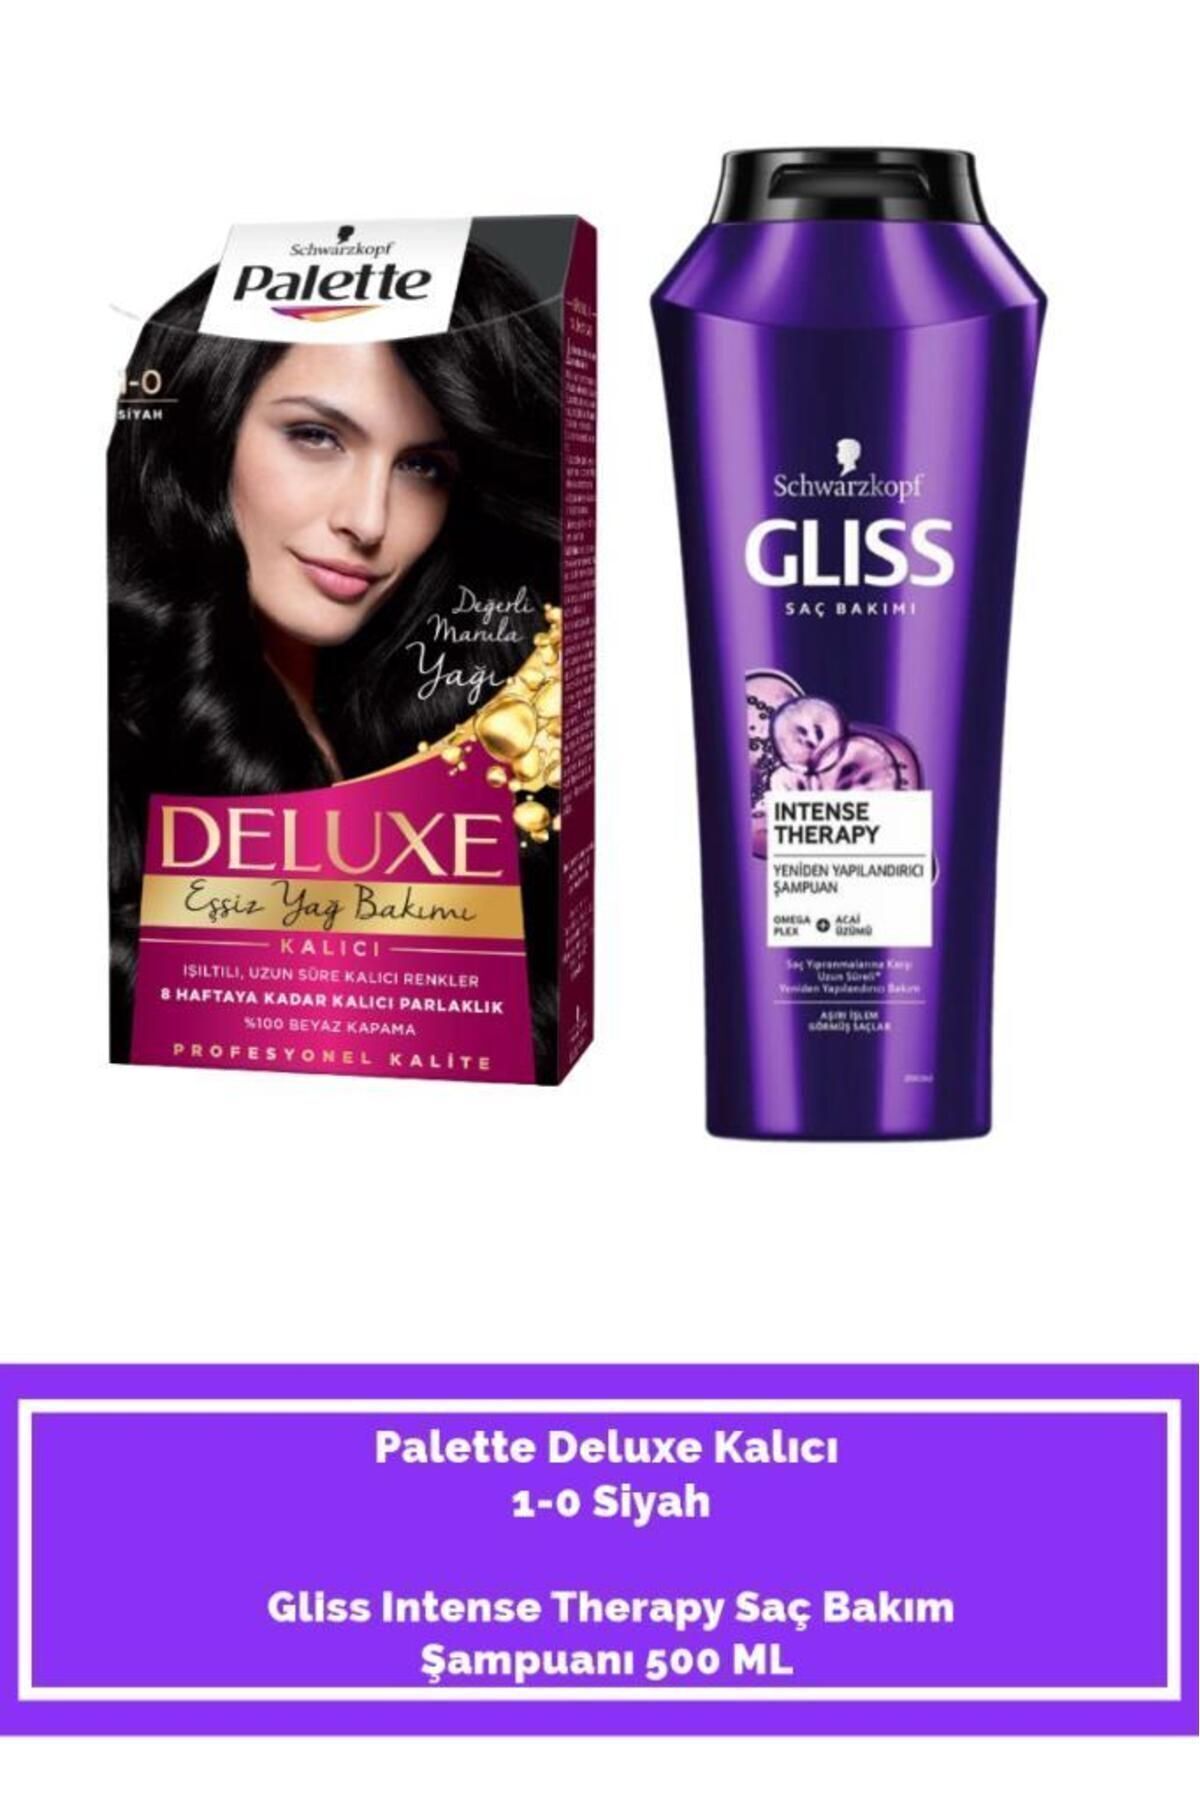 Palette Deluxe 1-0 Siyah+ Gliss Intense Therapy Saç Bakım Şampuanı 500 ML